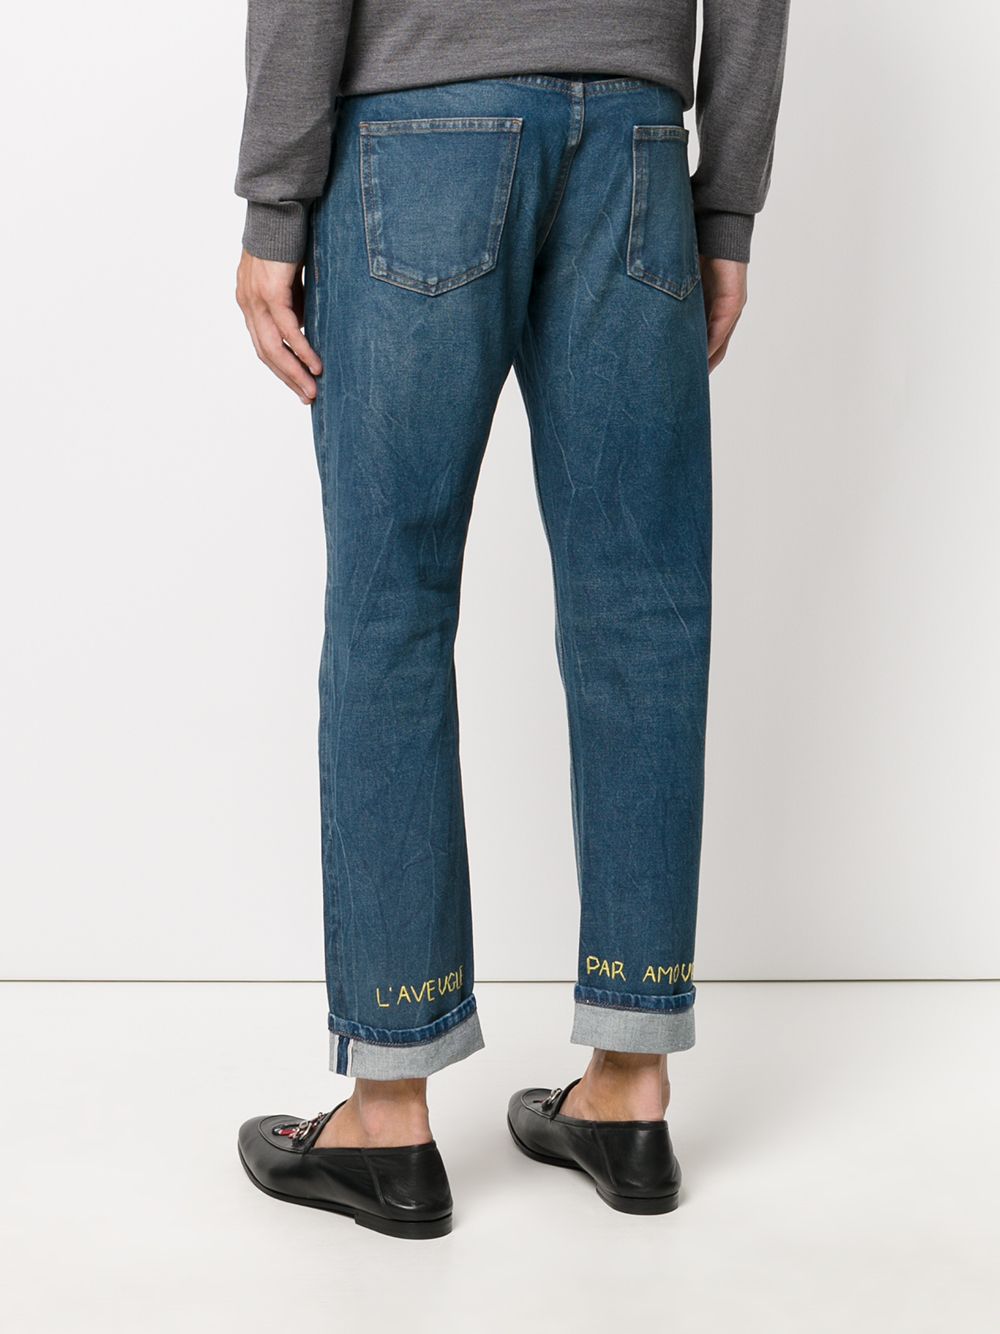 фото Gucci зауженные джинсы с вышивкой